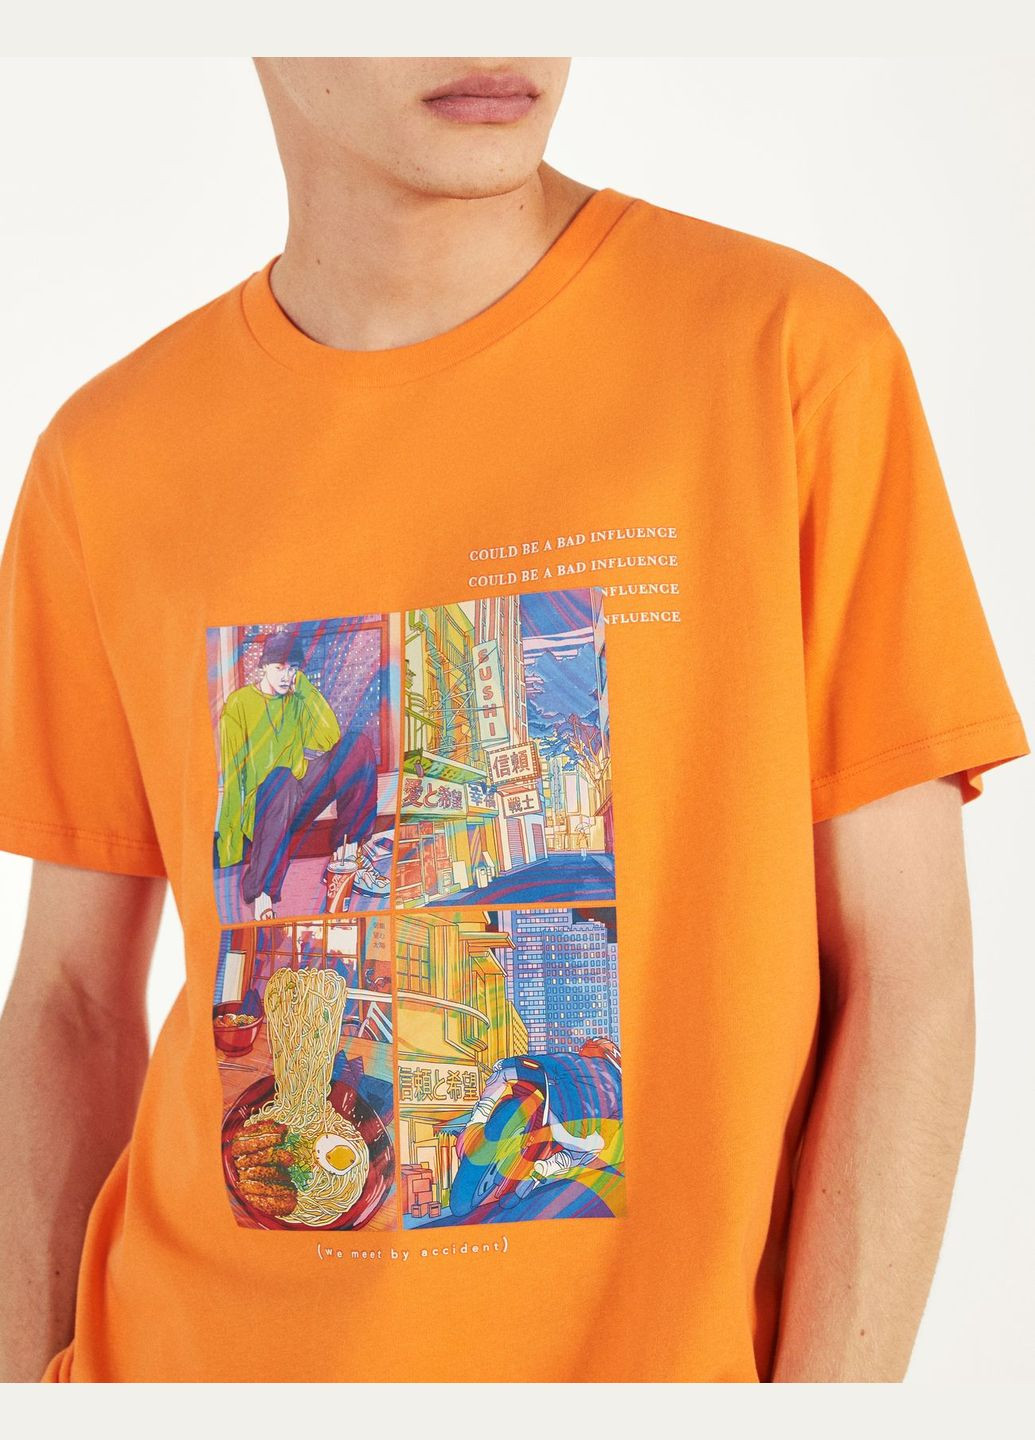 Оранжевая футболка Bershka Print 2417/922